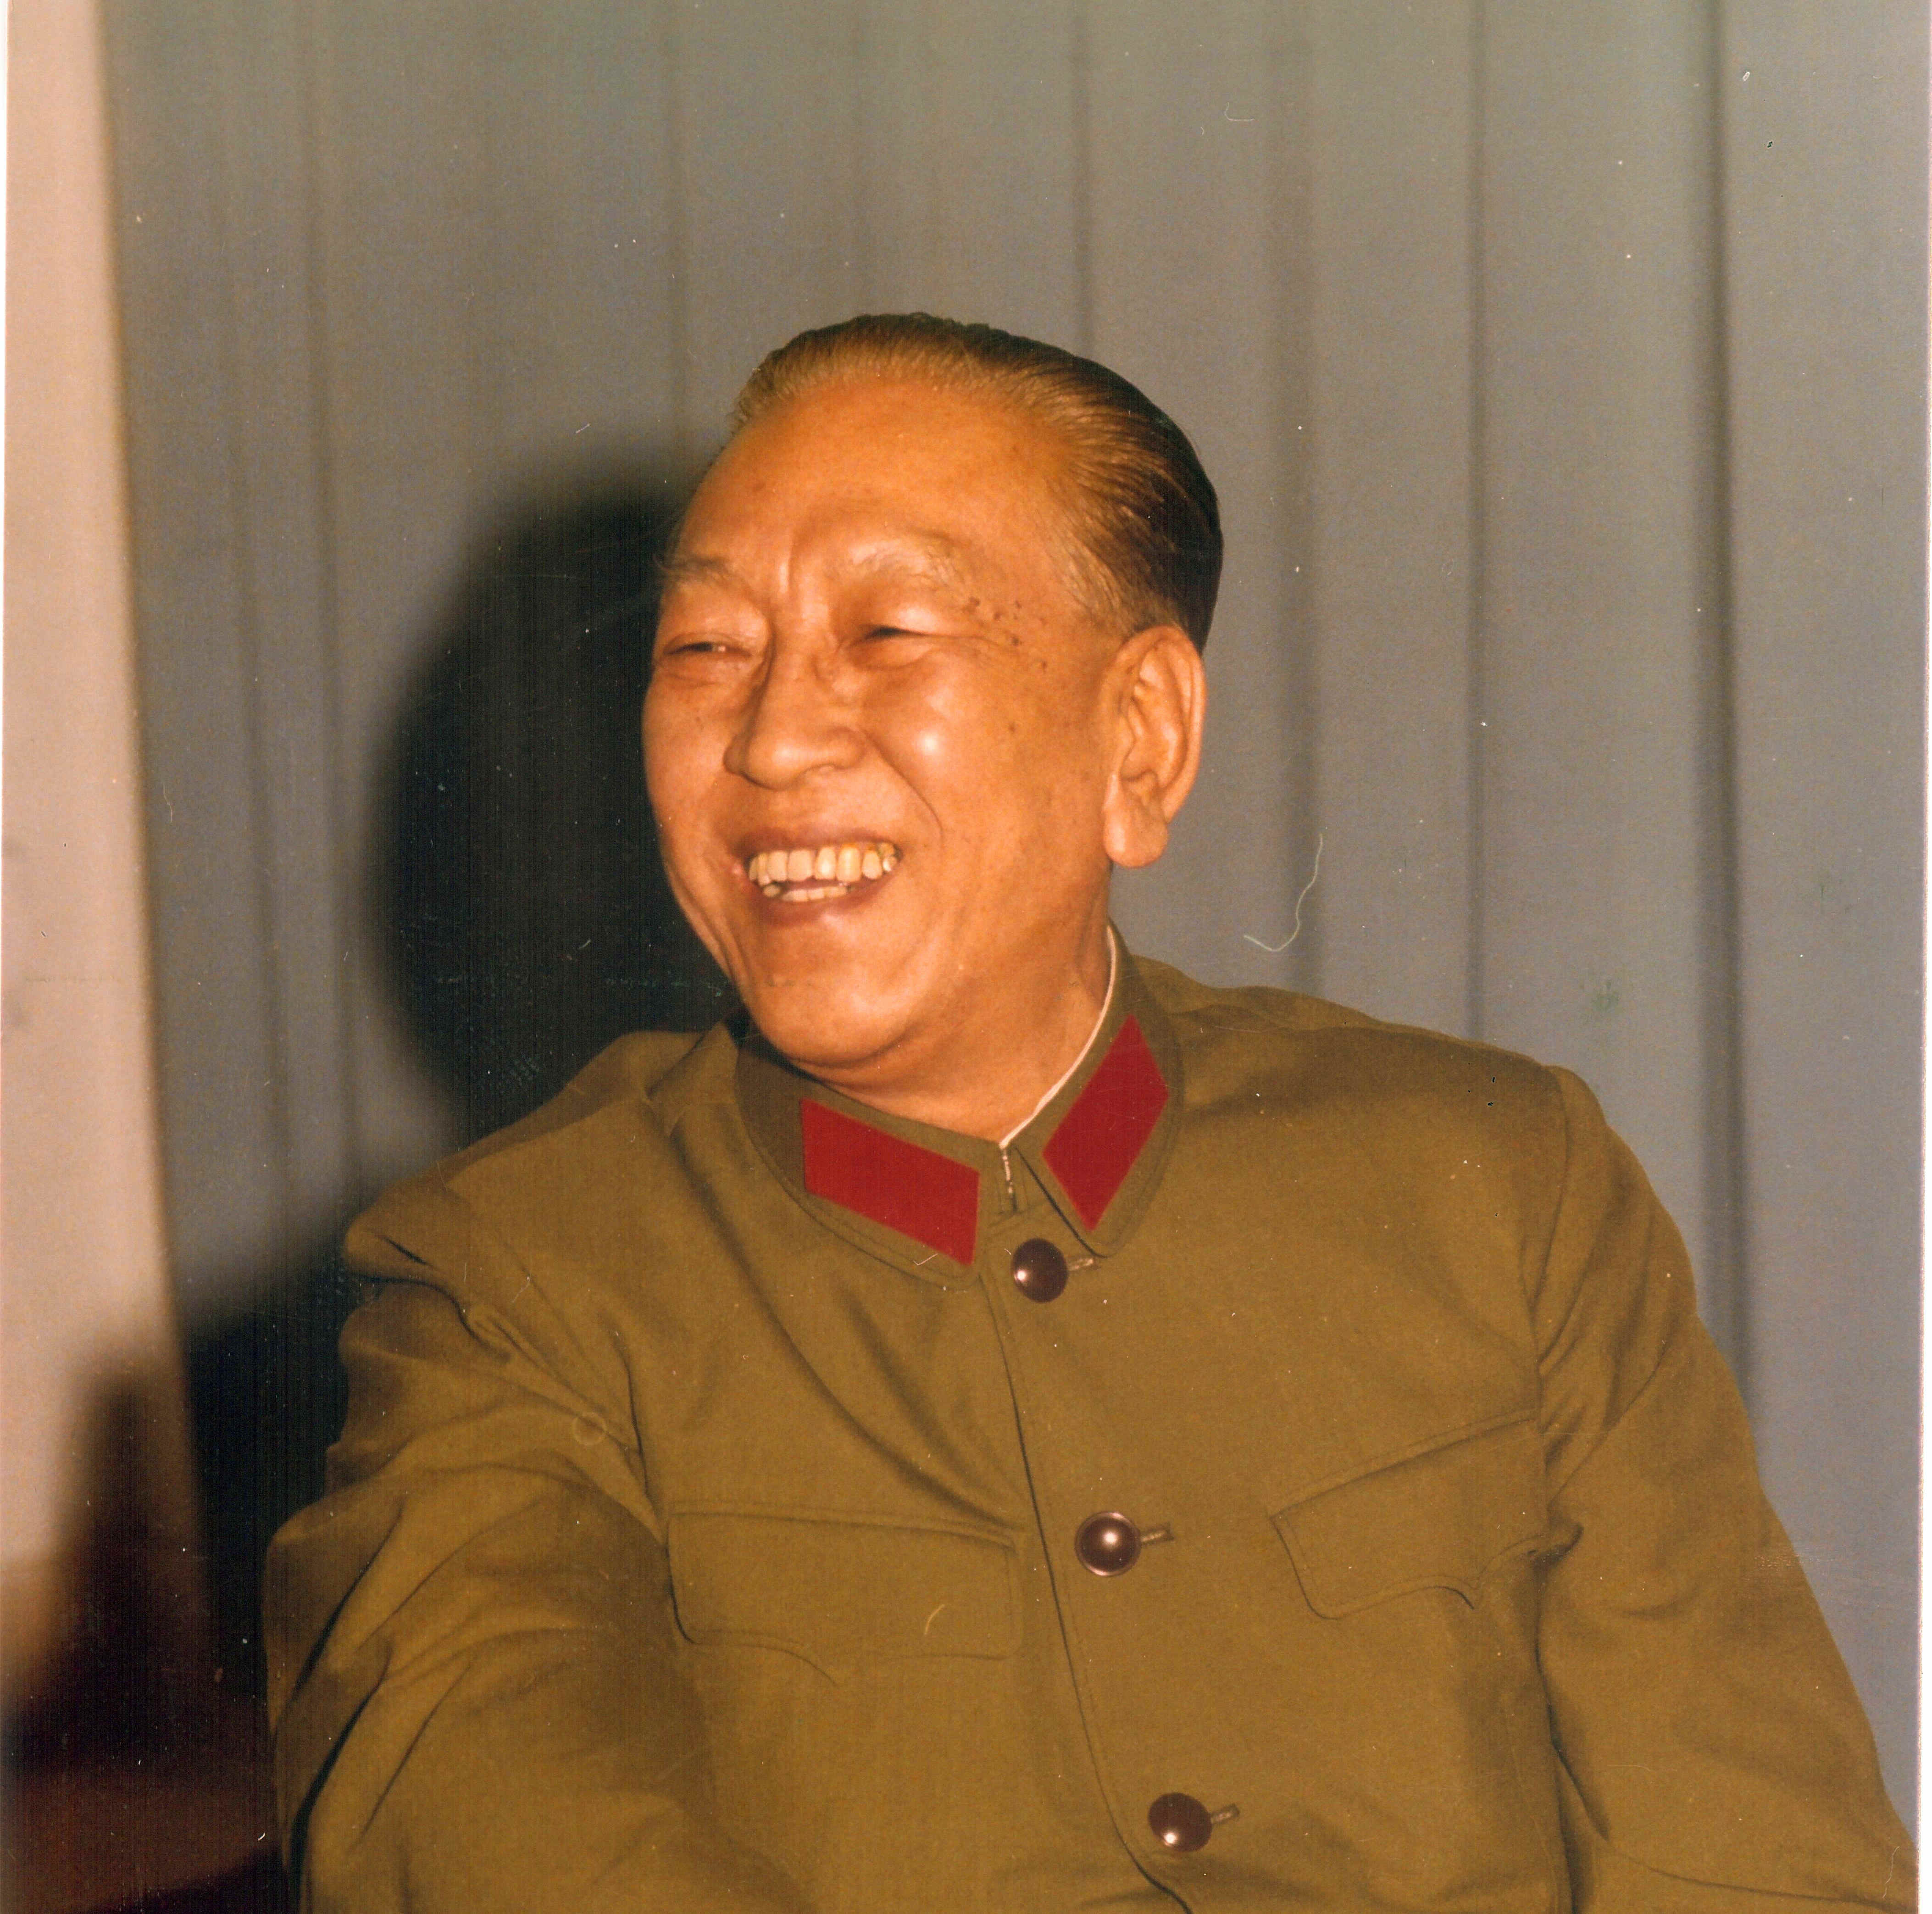 首页 图片我的爷爷耿飚,是新中国成立后历任国防部长中,唯一一位没有